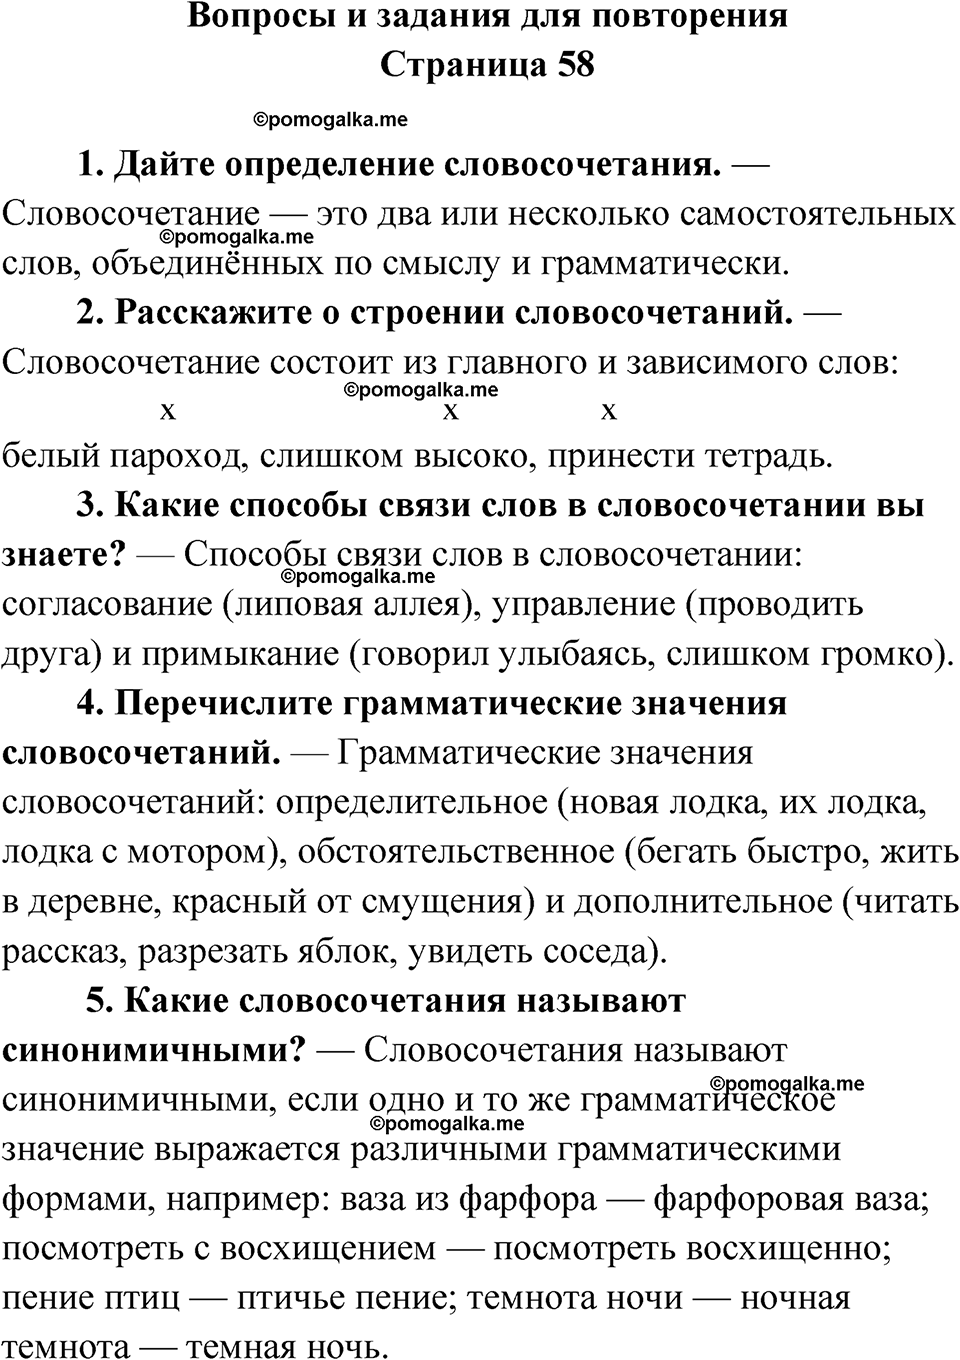 вопросы и задания для повторения, страница 58 русский язык 8 класс Бархударов 2023 год